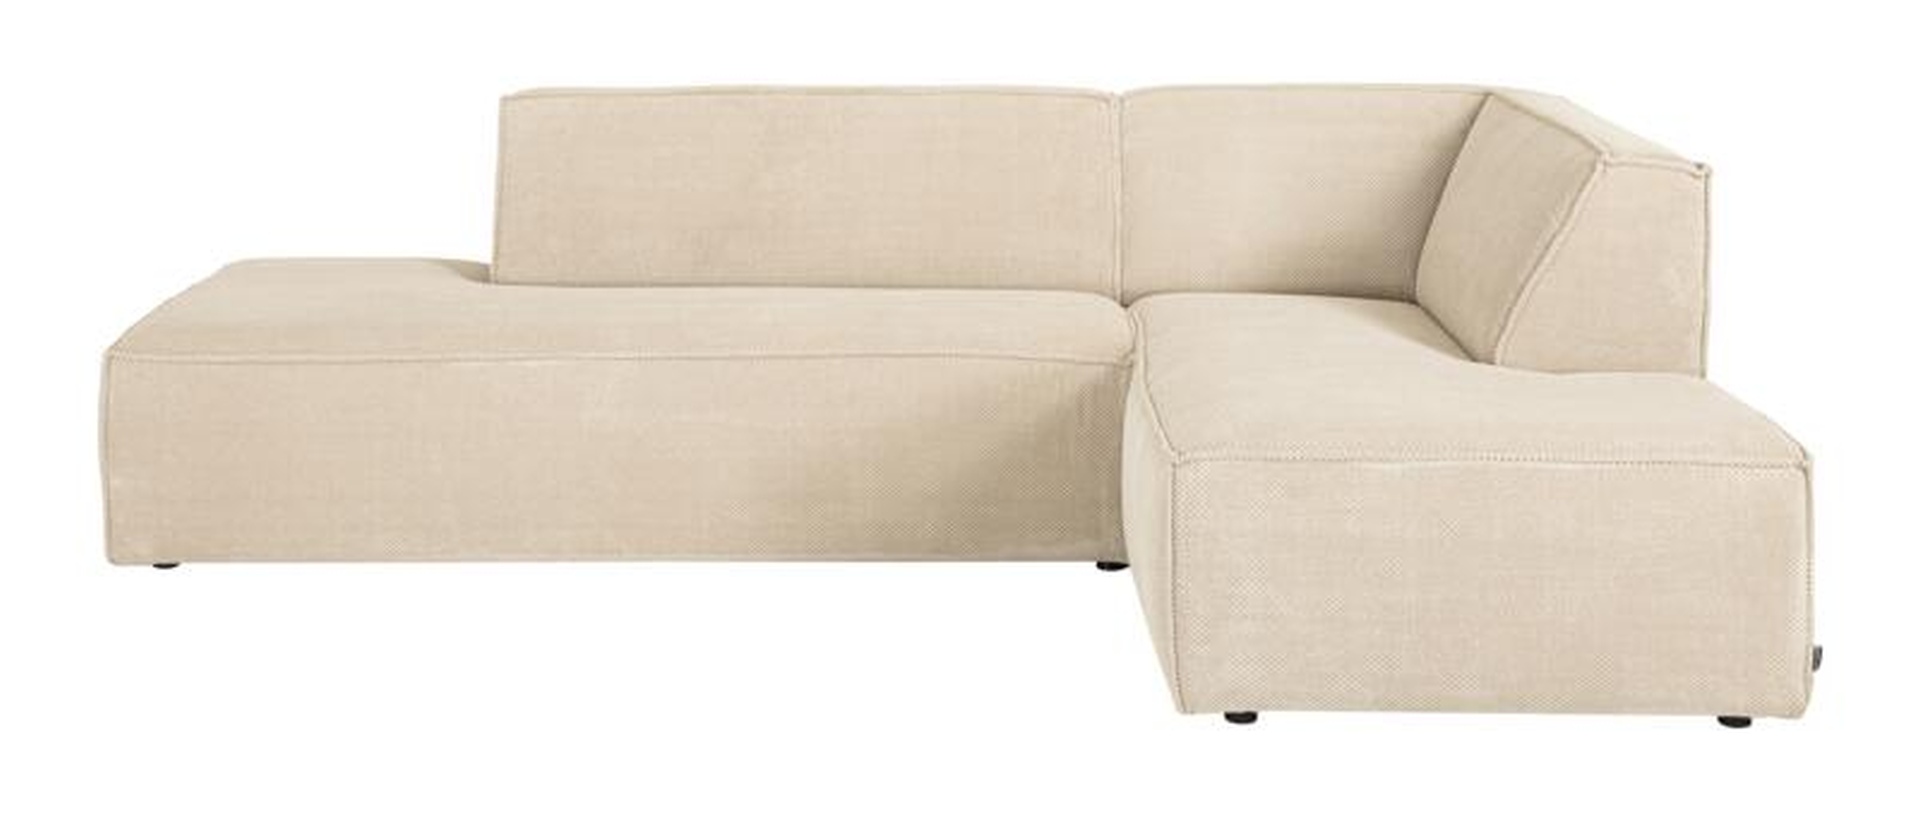 Das Ecksofa Cliff wurde aus weichem Stoff gefertigt, welcher einen Beigen Farbton besitzt. Das Sofa überzeugt mit seinem modernem Design. Diese Variante hat die Ausführung Rechts.